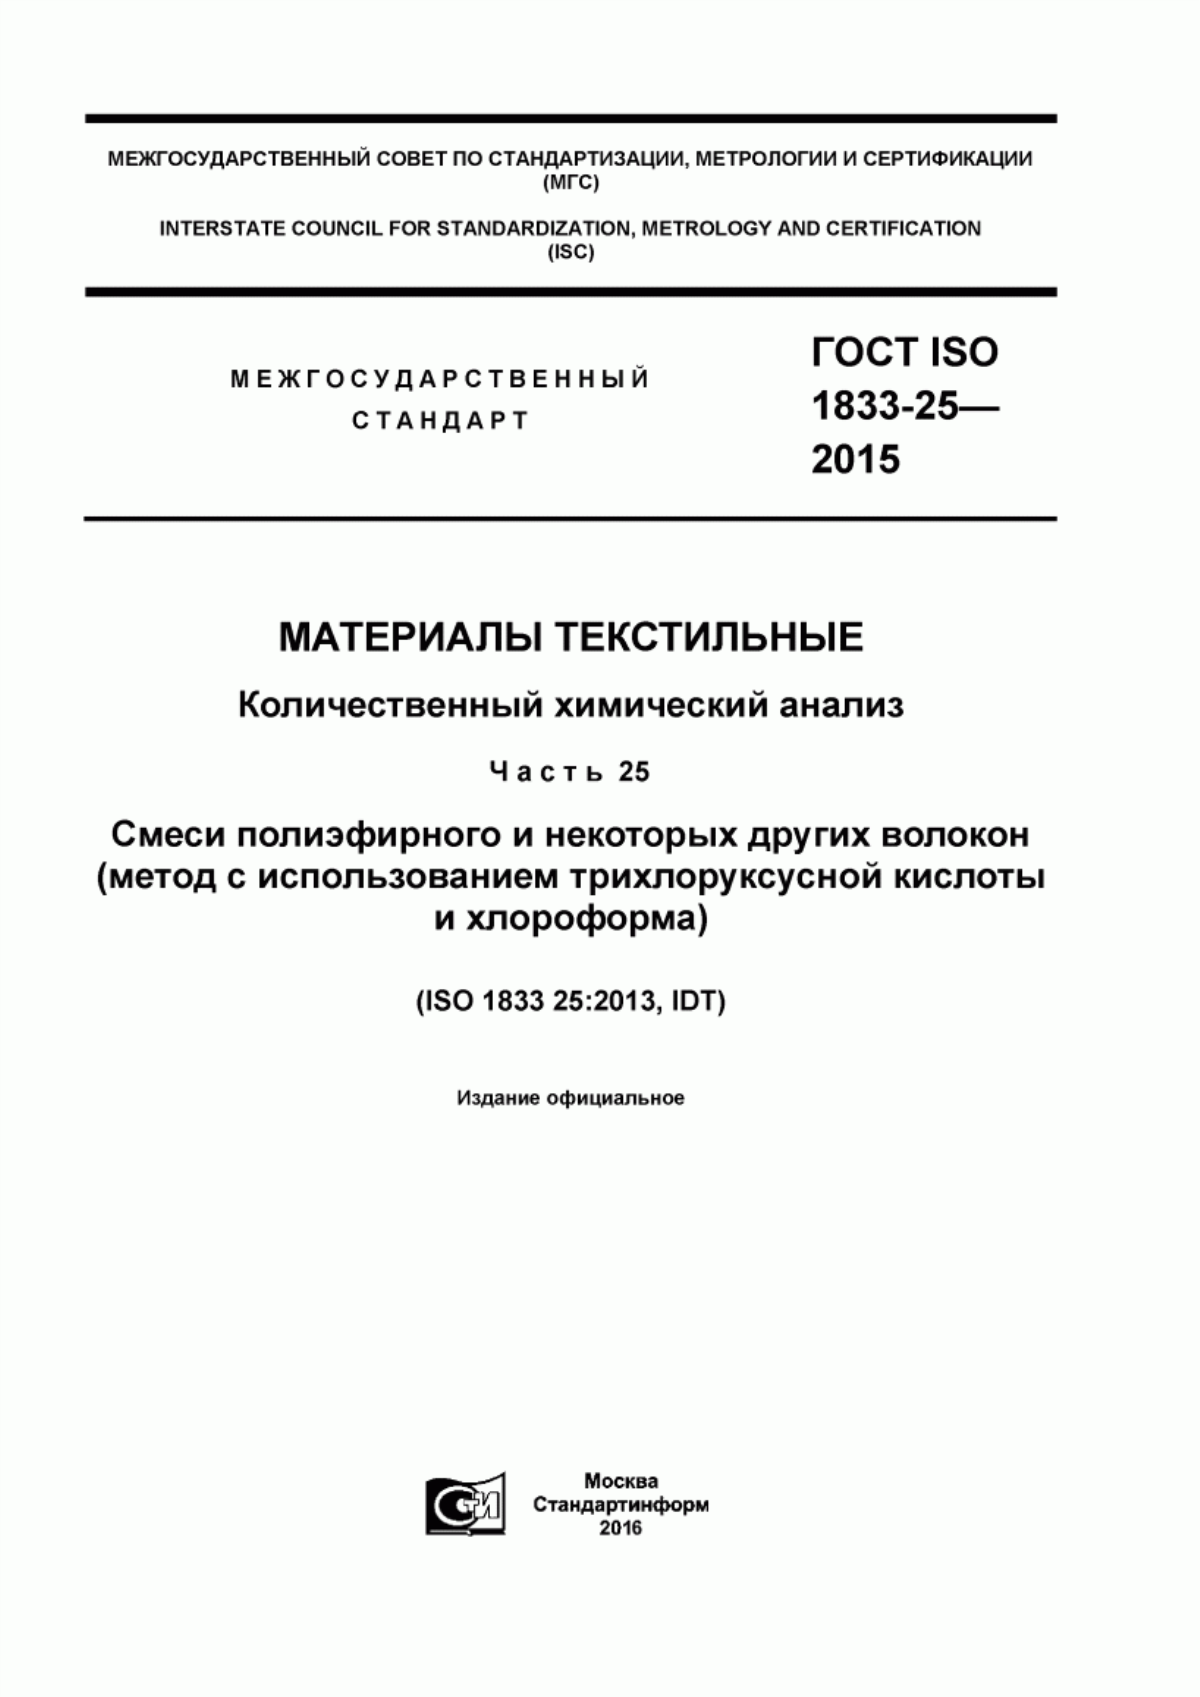 ГОСТ ISO 1833-25-2015 Материалы текстильные. Количественный химический анализ. Часть 25.Смеси полиэфирного и некоторых других волокон (метод с использованием трихлоруксусной кислоты и хлороформа)